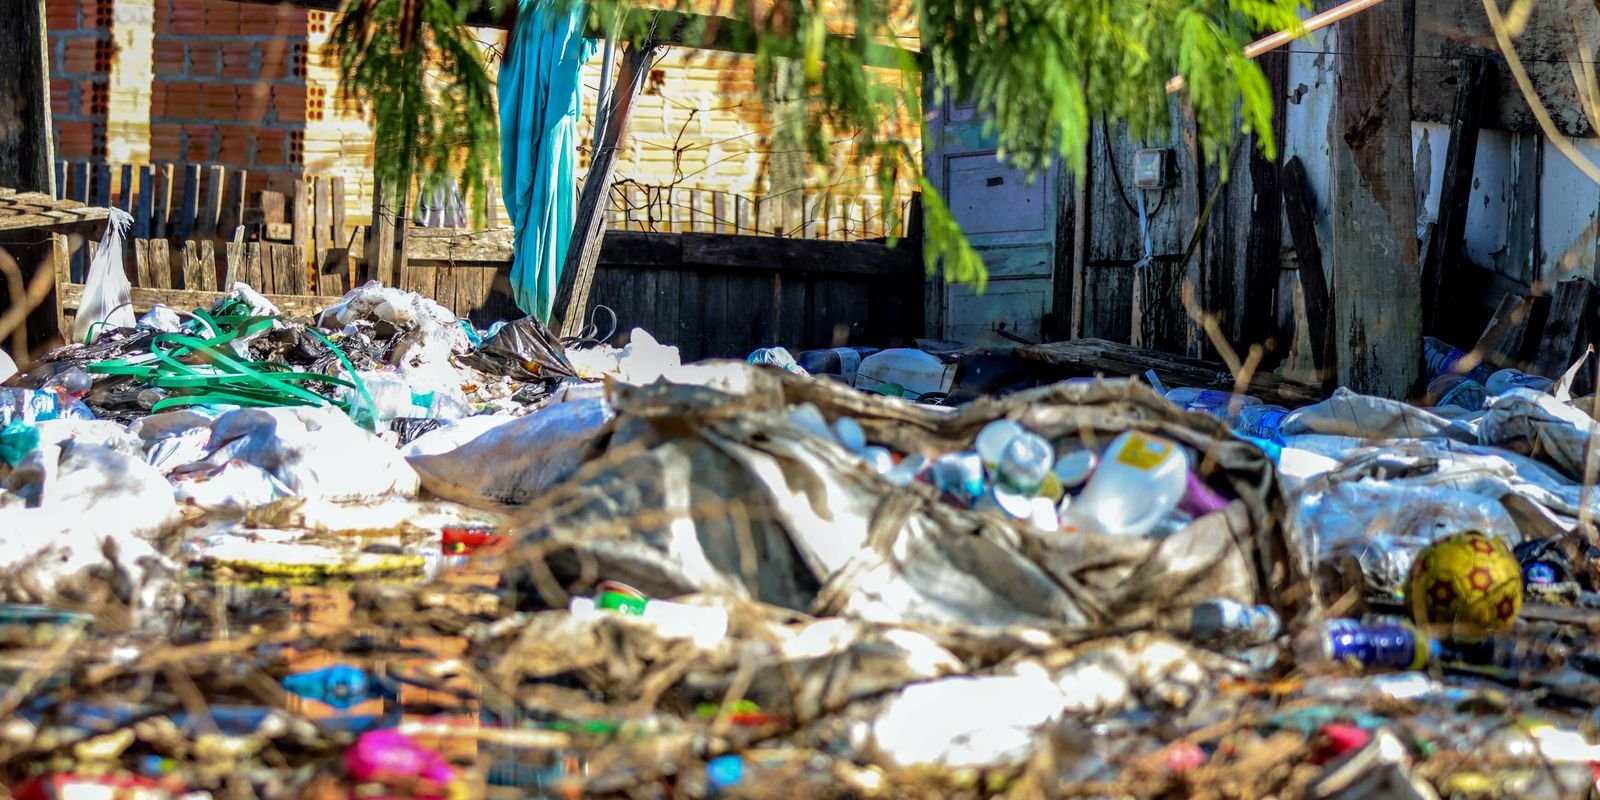 Brasil tem 1.942 cidades com risco de desastre ambiental